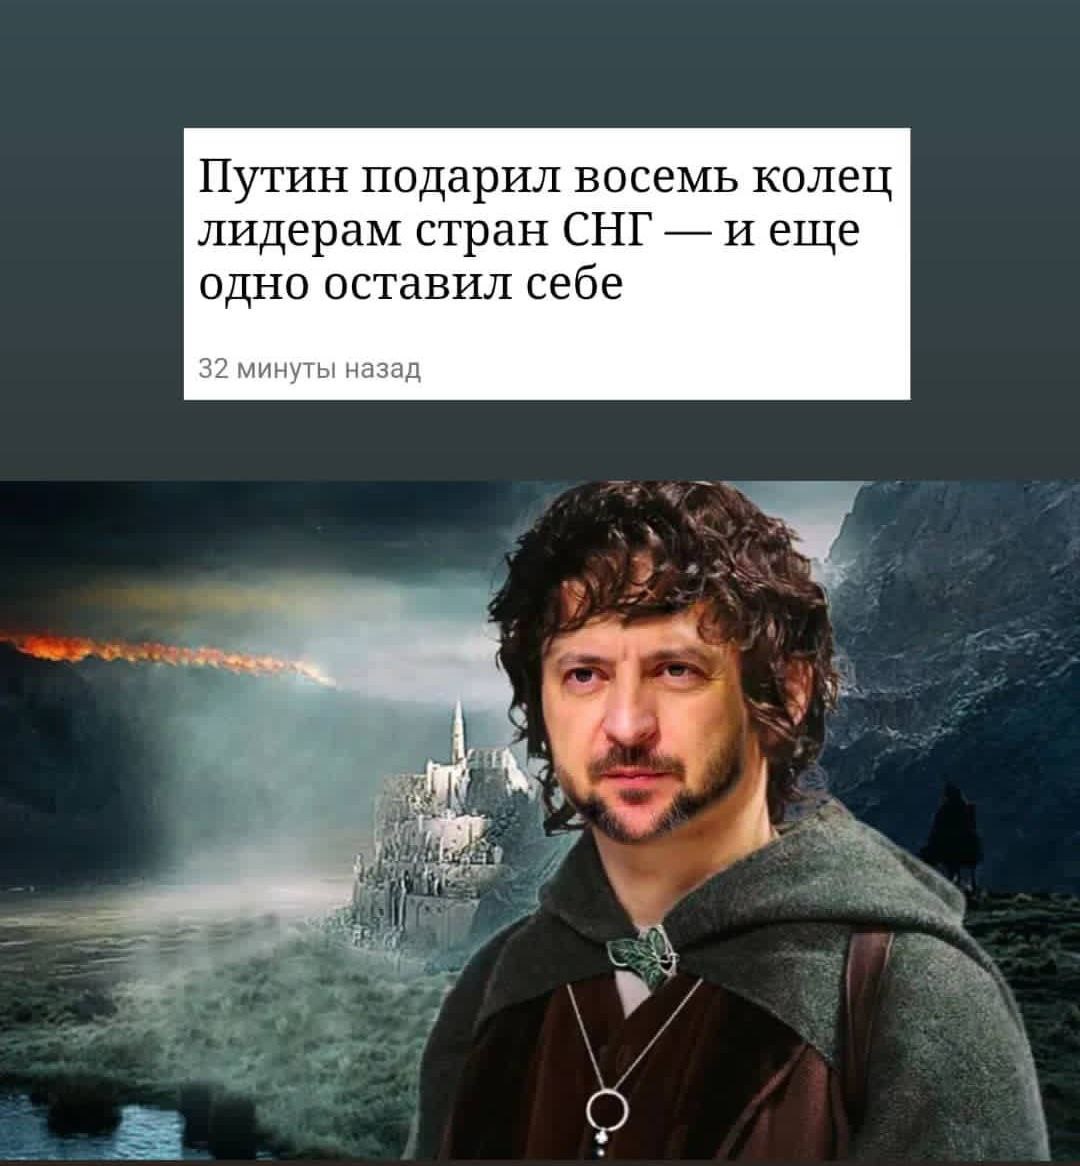 В РФ лидерам стран СНГ подарили 9 колец: в Сети появились мемы о «Властелине конца» - 11 - изображение